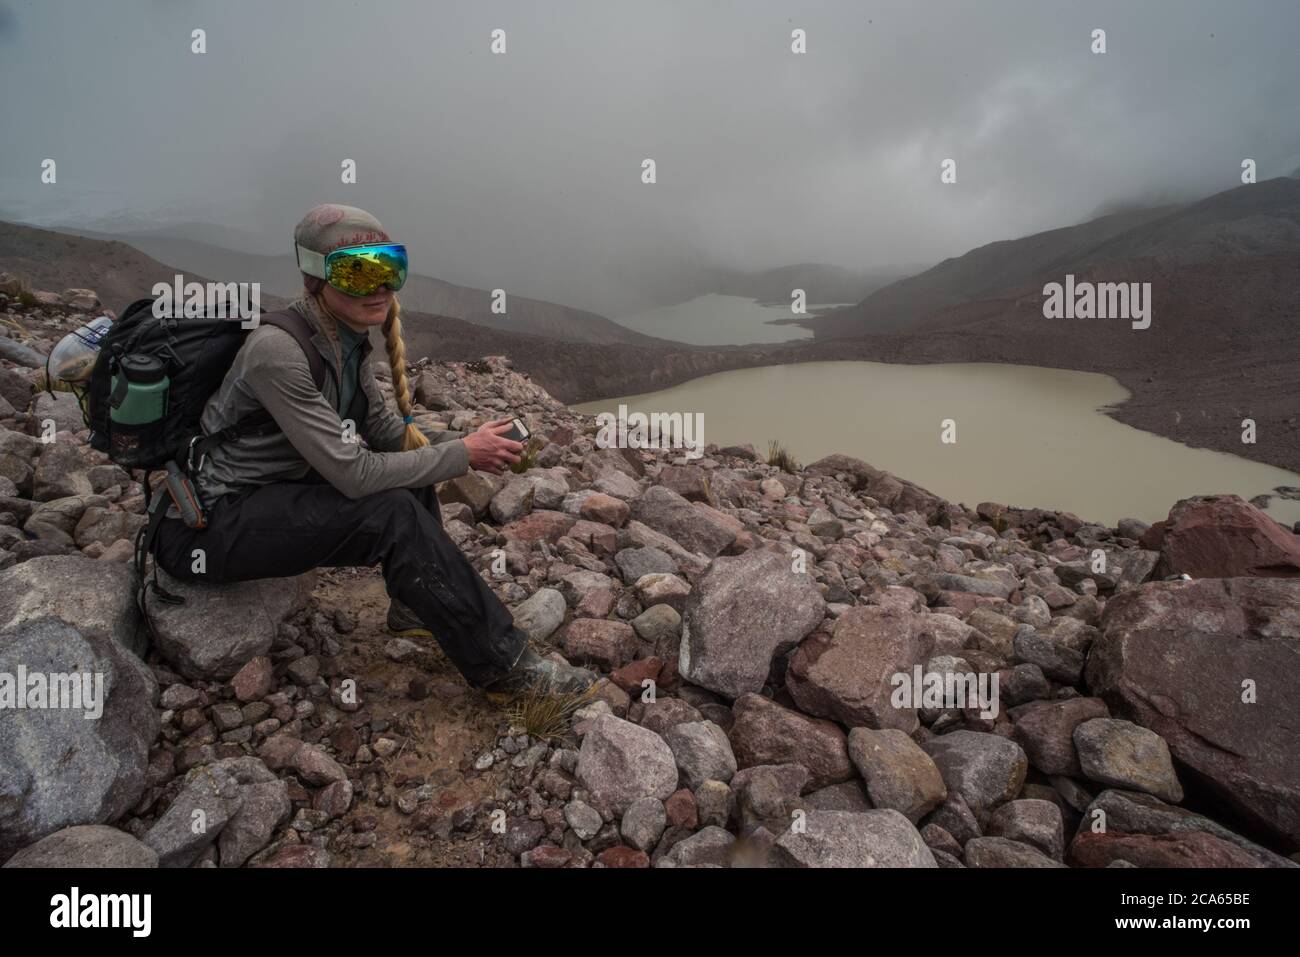 Un biologiste qui fait une randonnée à travers la Cordillera Vilcanota fait une pause et s'assoit sur une pierre dans les montagnes des Andes où il y a peu d'oxygène. Banque D'Images